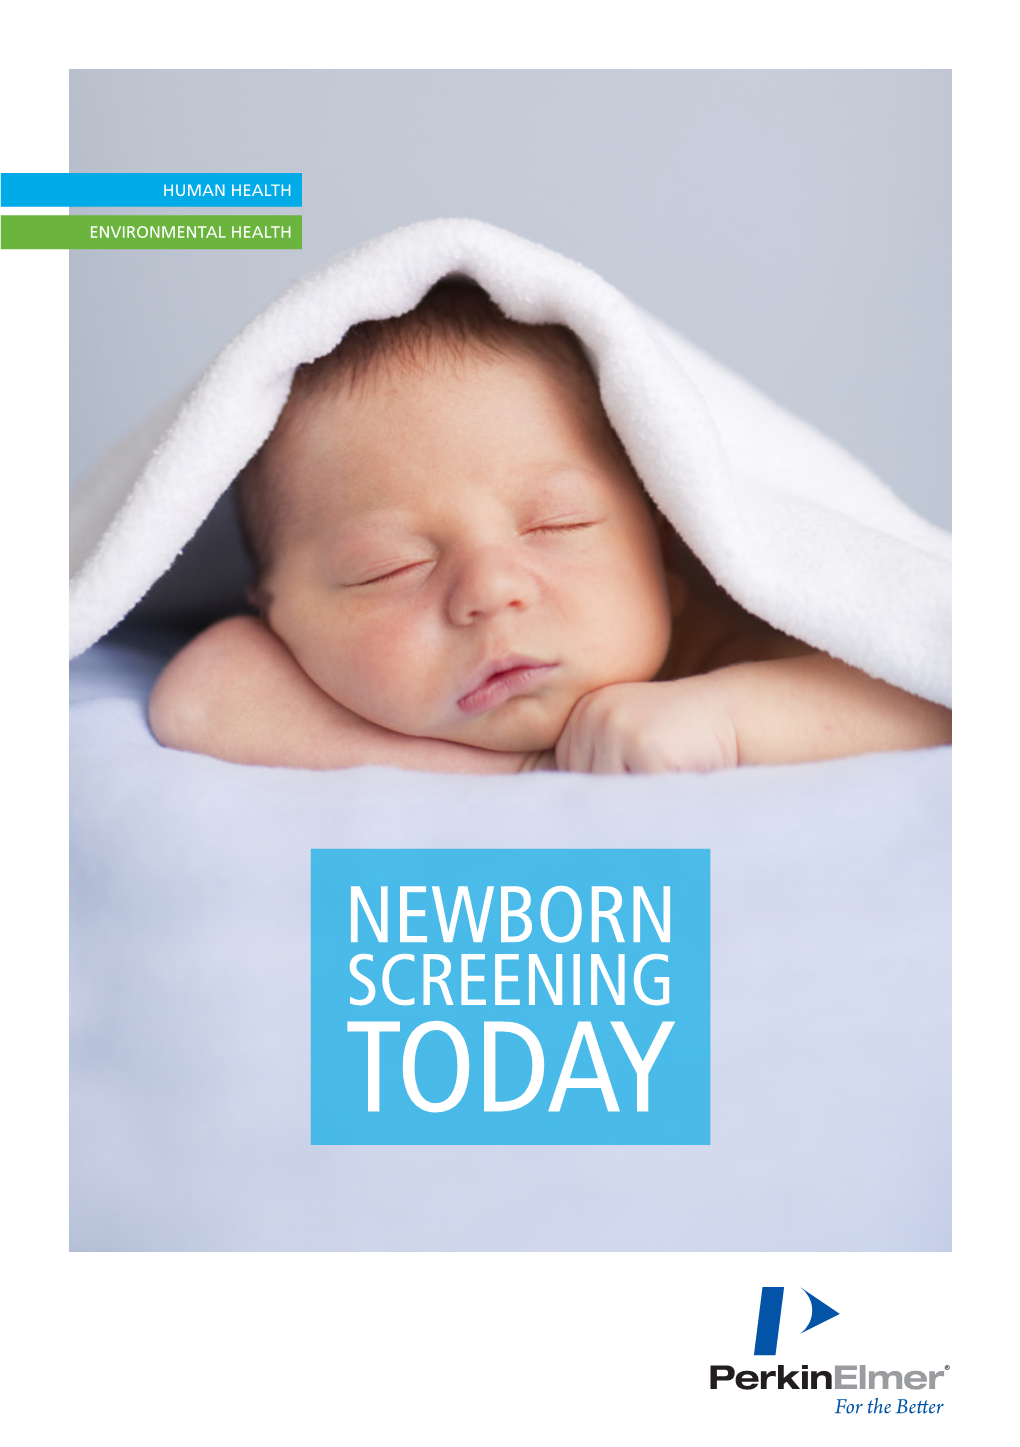 NEWBORN SCREENING TODAY 2 | Newborn Screening Today Newborn Screening Today | 3 CONTENTS